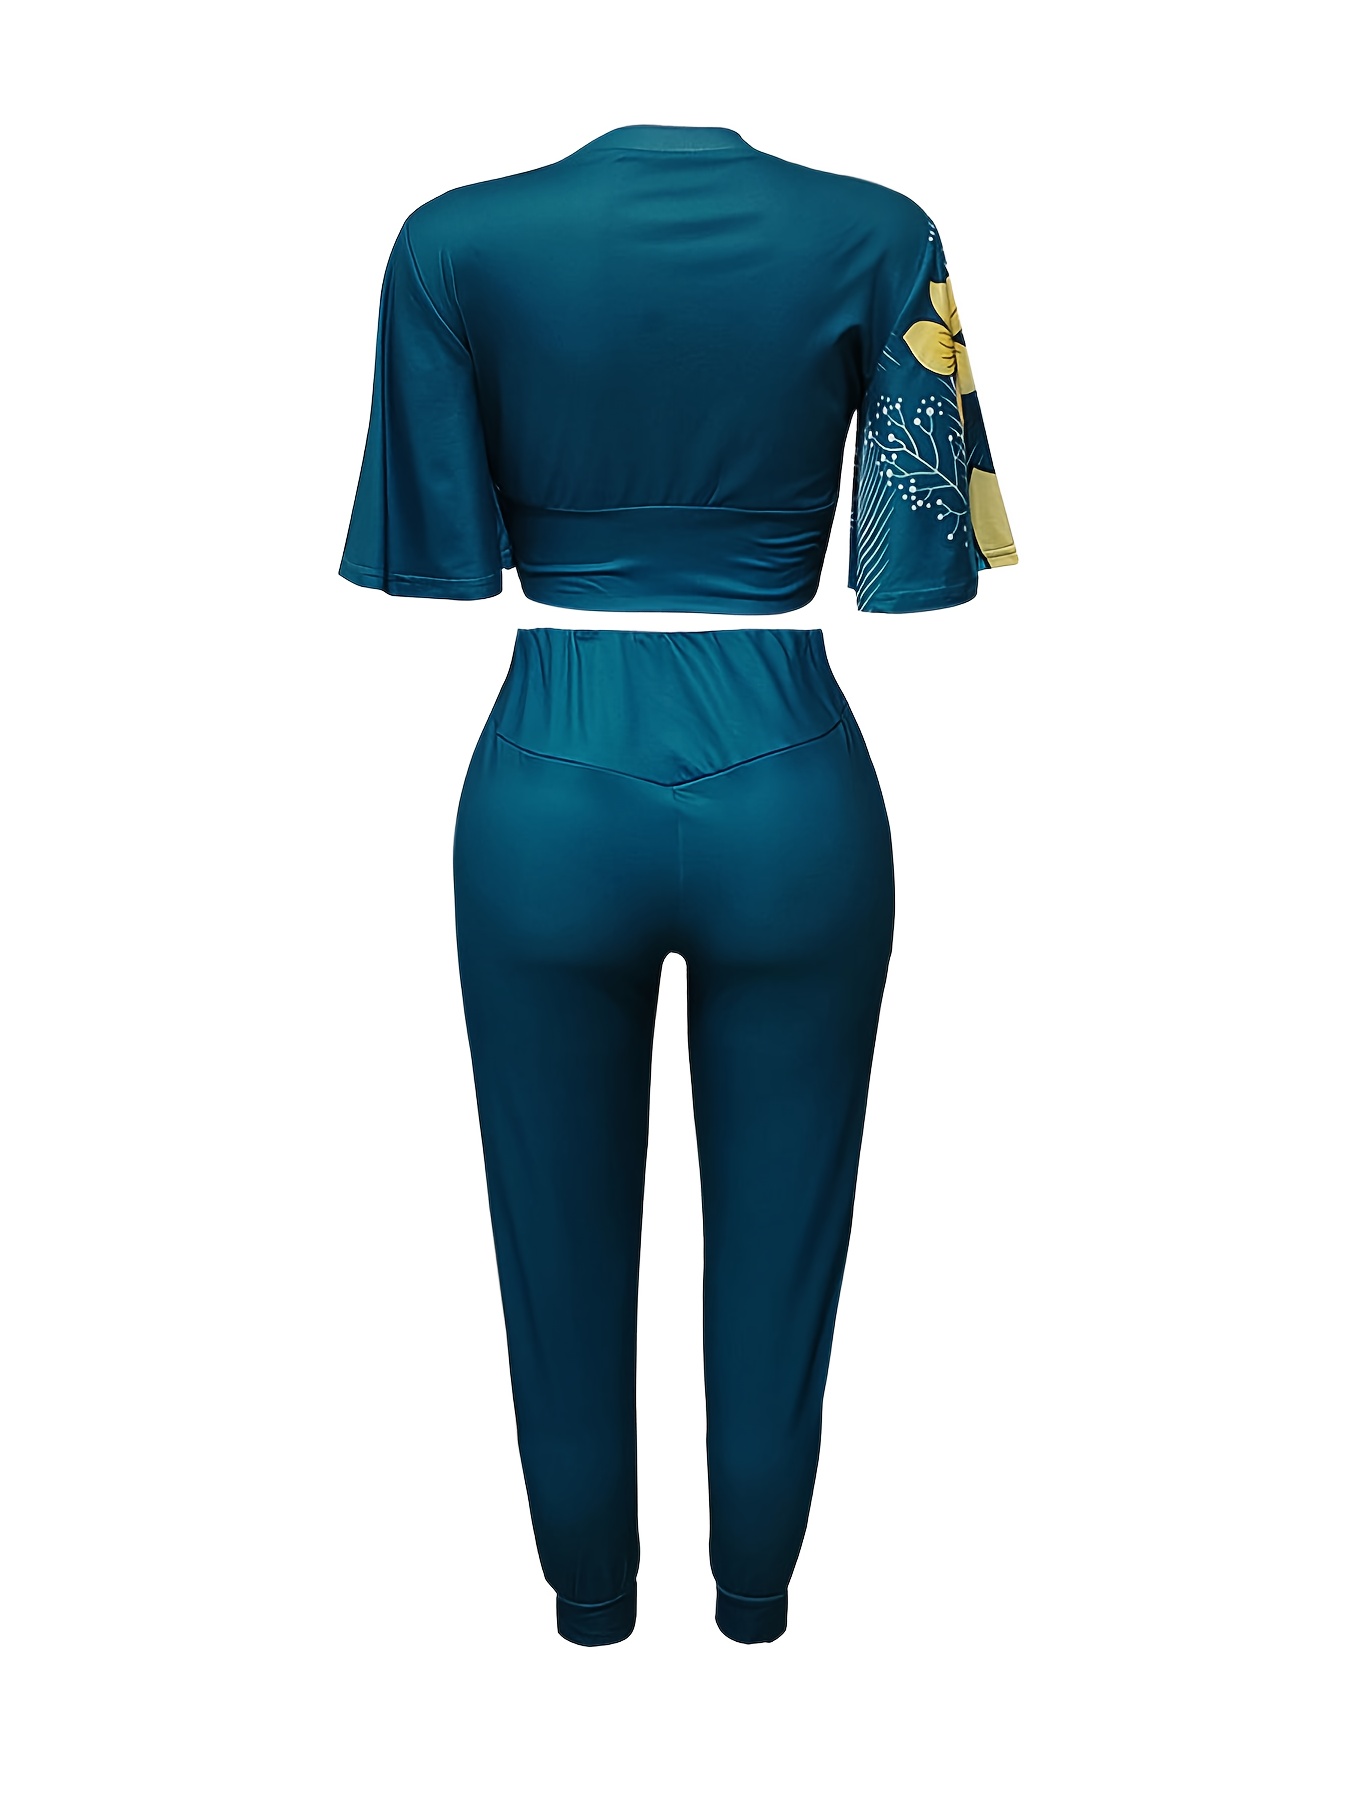 Women's 2 Piece Set - Floral Crop Top and Pants Ensemble / Navy Blue